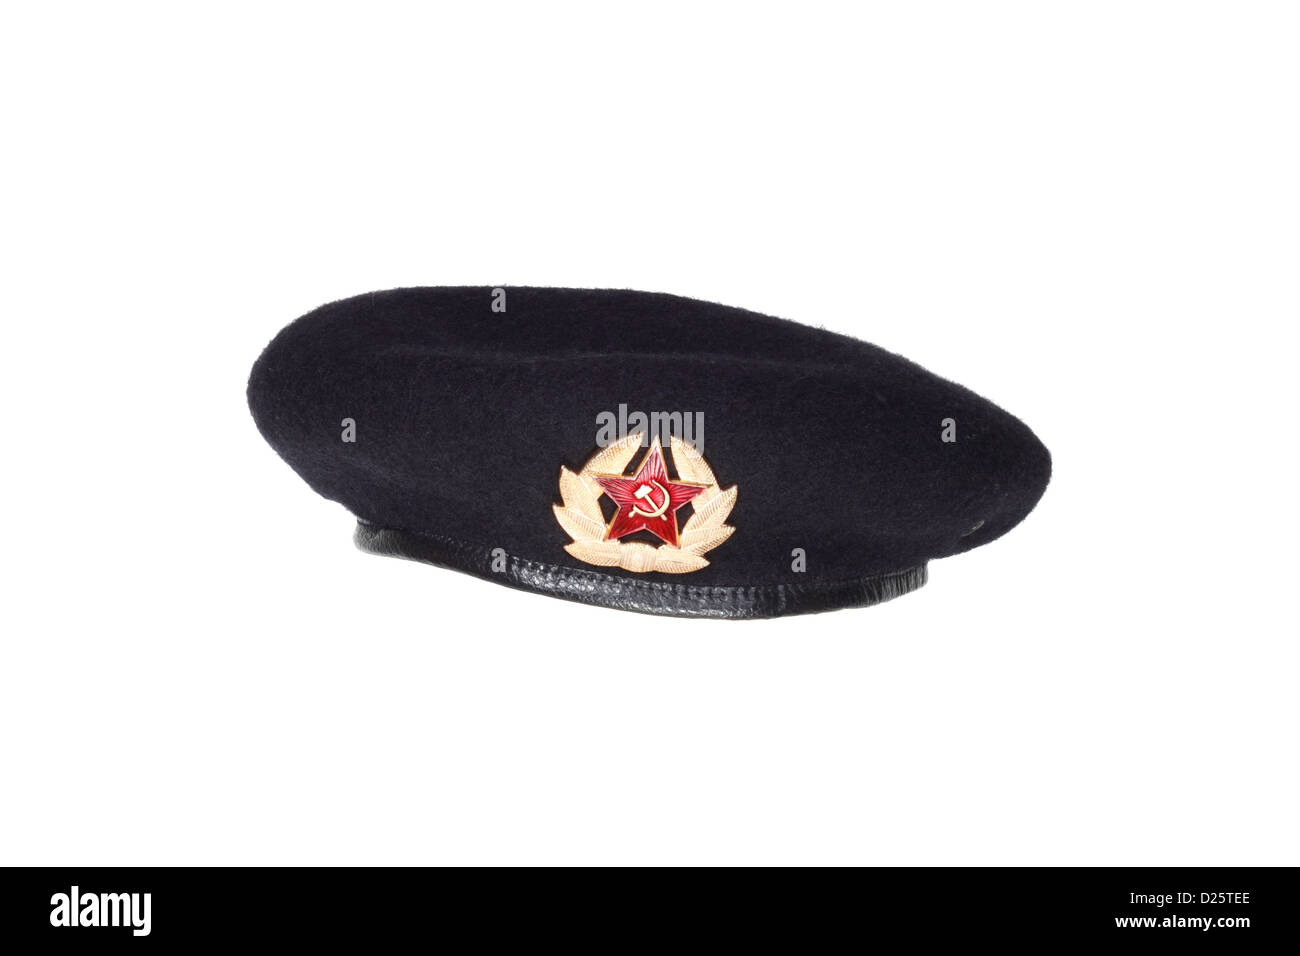 Einheitliche Kopfbedeckung der sowjetischen Spezialeinheiten oder Marines. Schwarzer Wolle Baskenmütze mit einem Abzeichen. Isoliert auf weißem Hintergrund Stockfoto